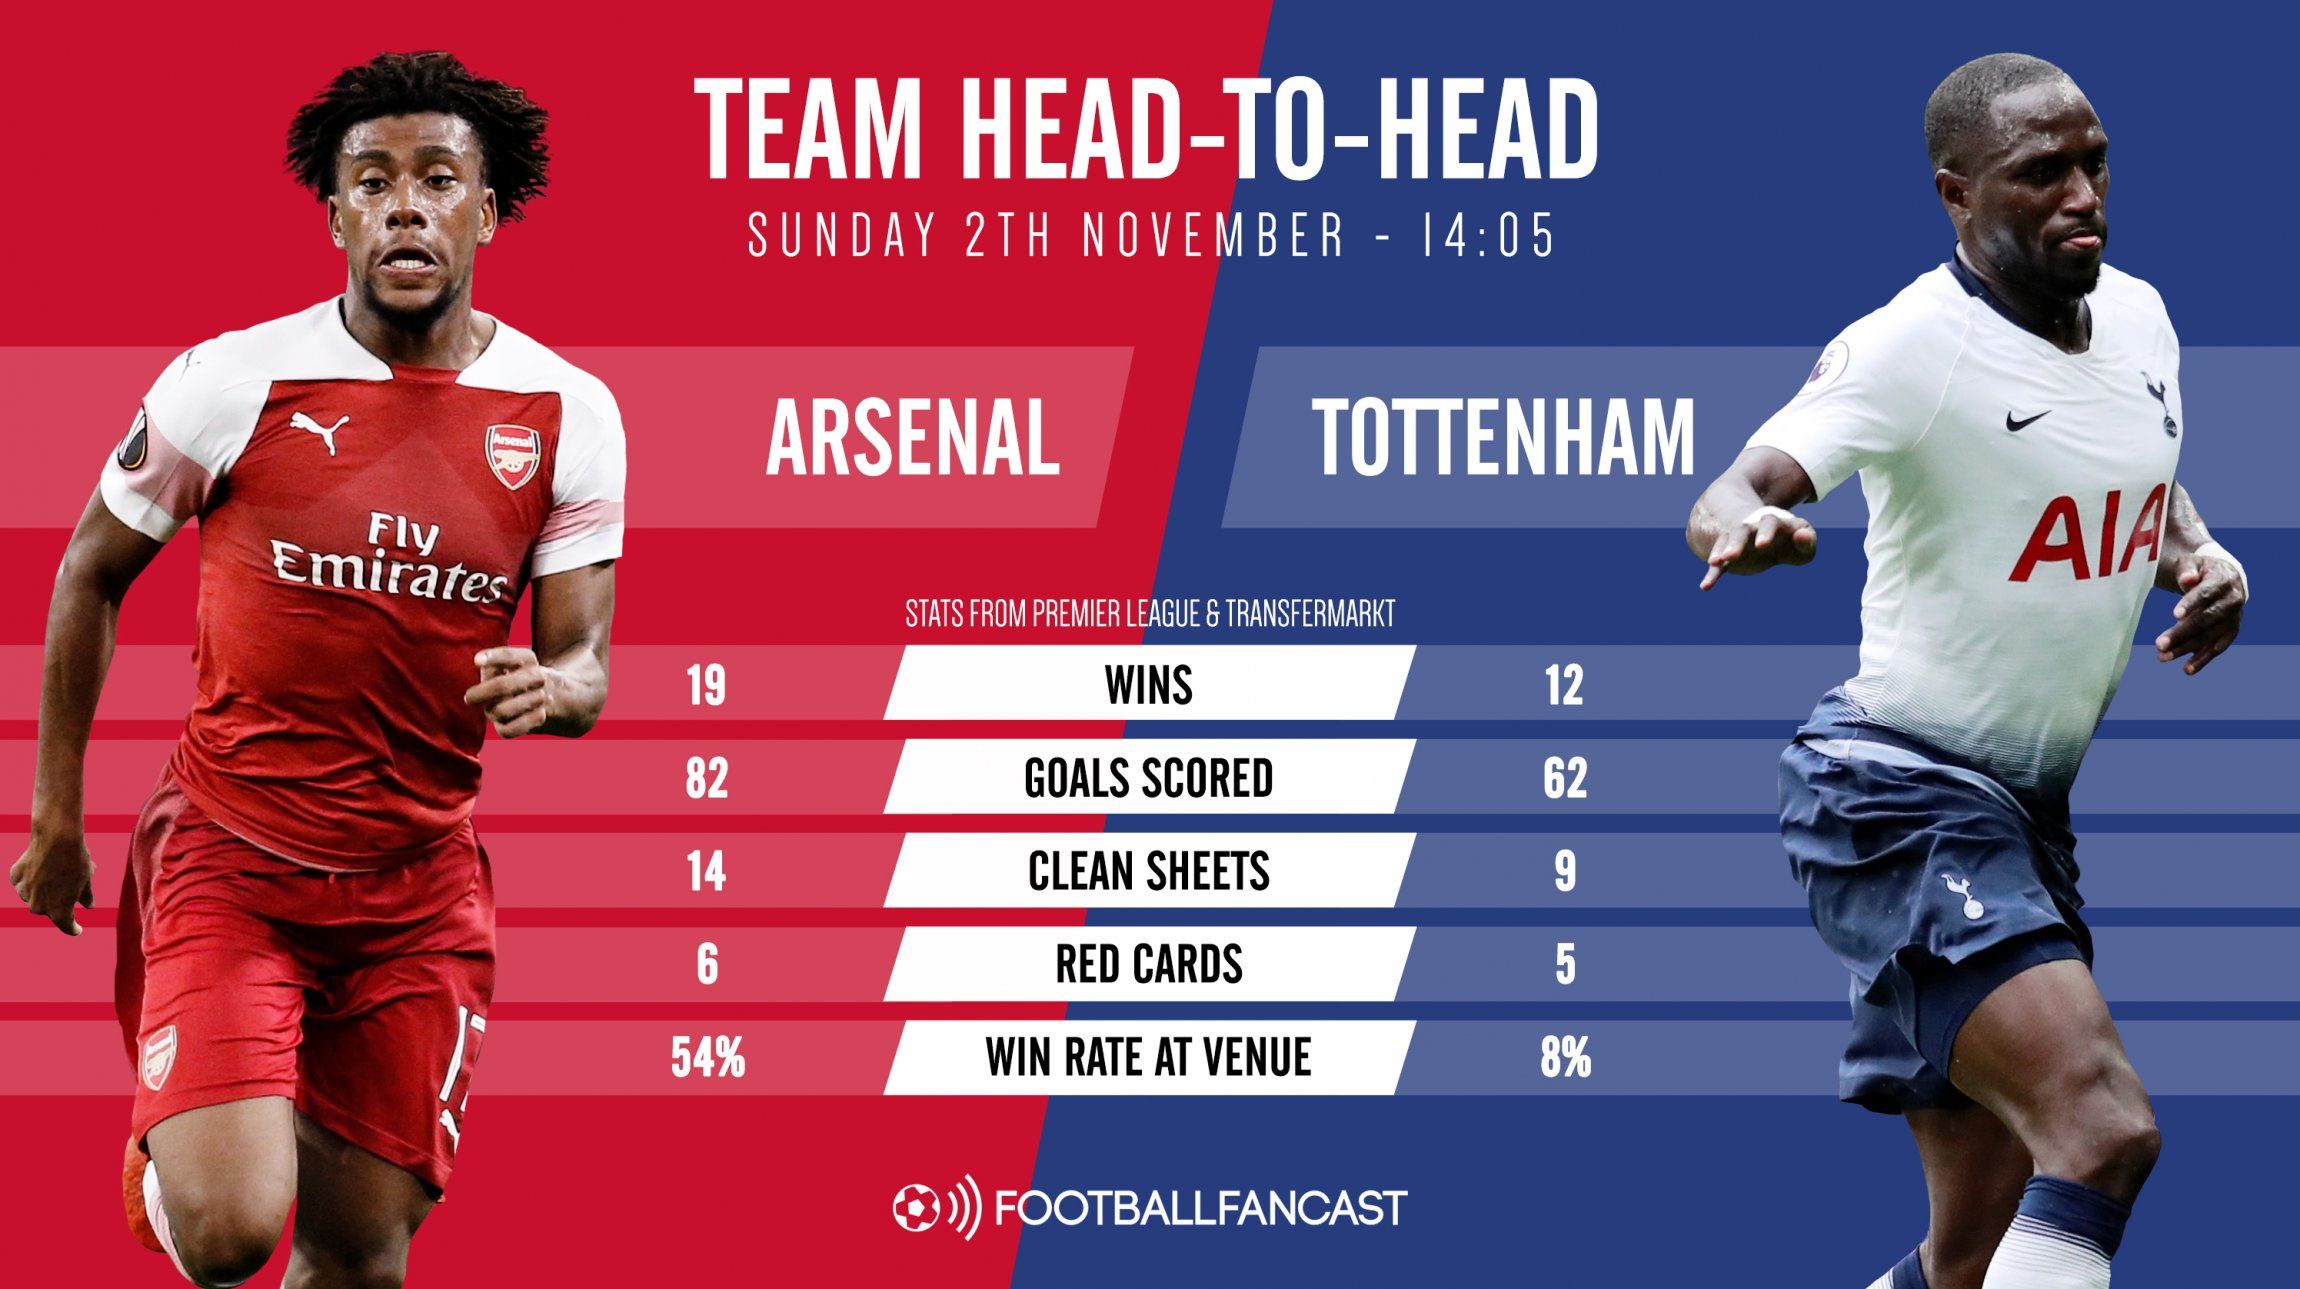 Head to Head record - Arsenal vs Tottenham